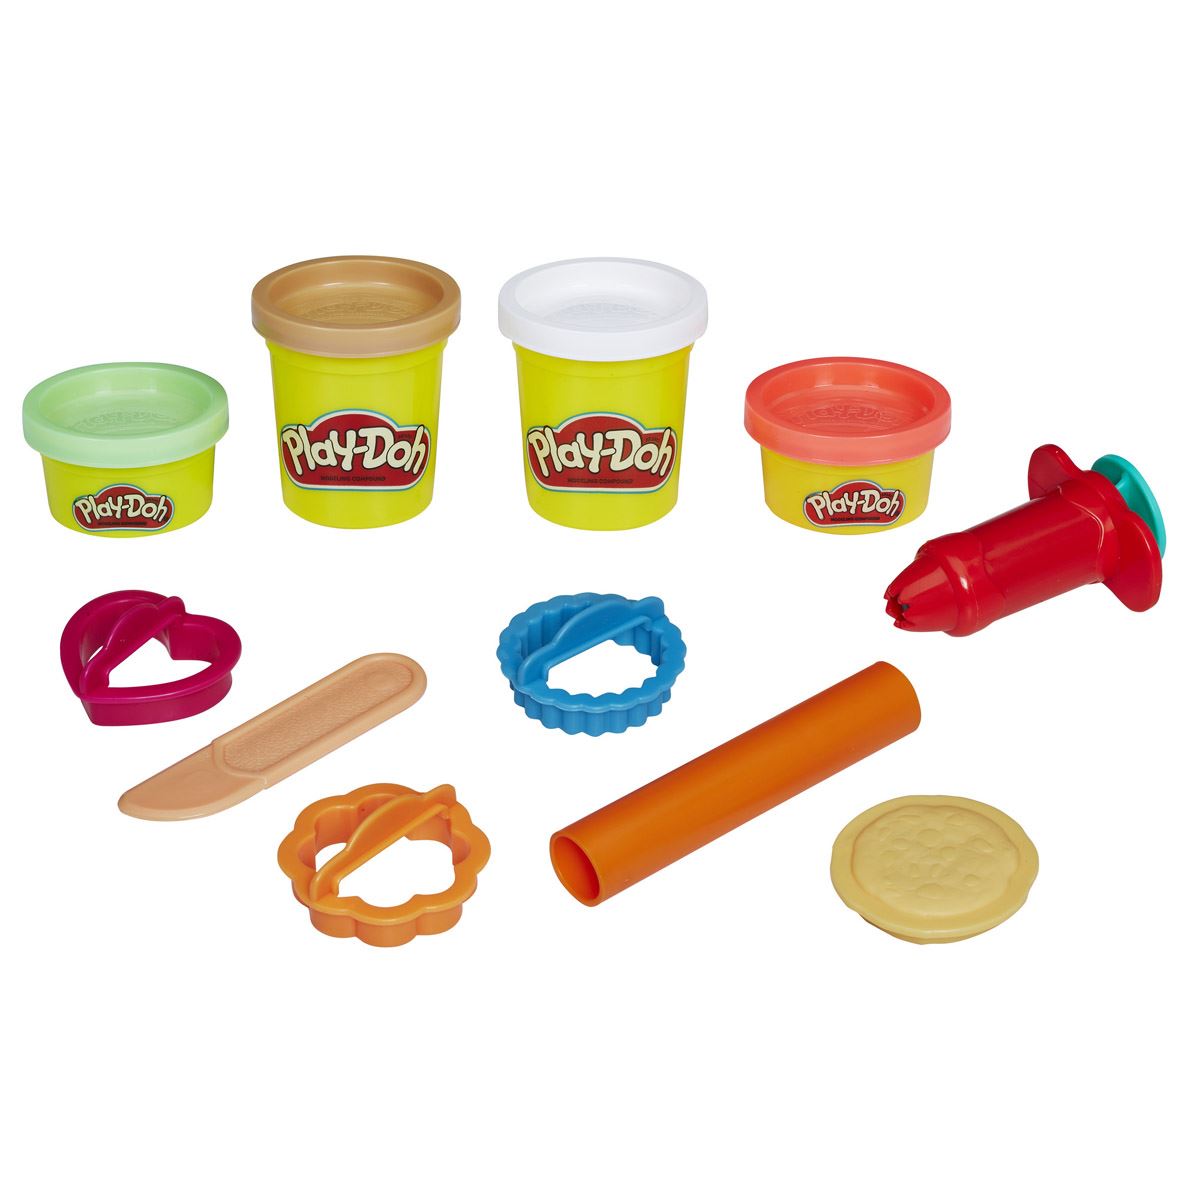 Tarro de Galletas Play-Doh Kitchen